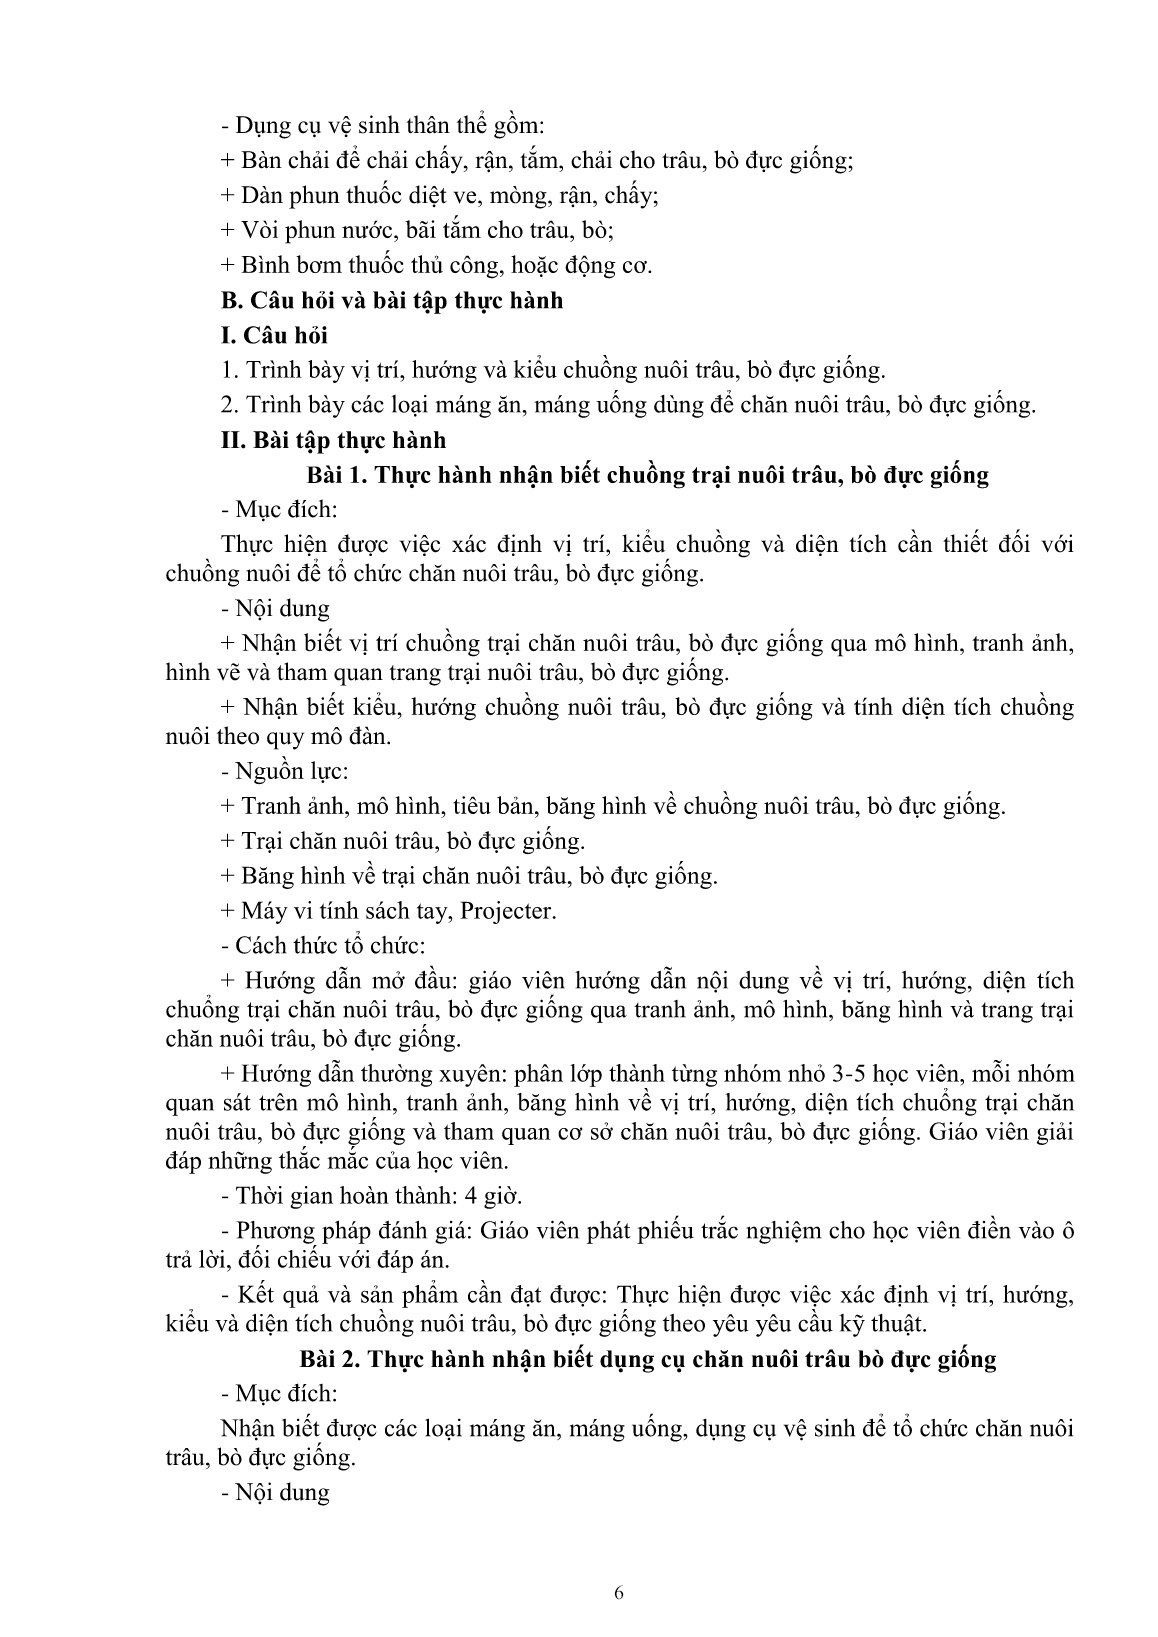 Giáo trình mô đun Nuôi trâu, bò đực giống (Trình độ: Đào tạo dưới 3 tháng) trang 8